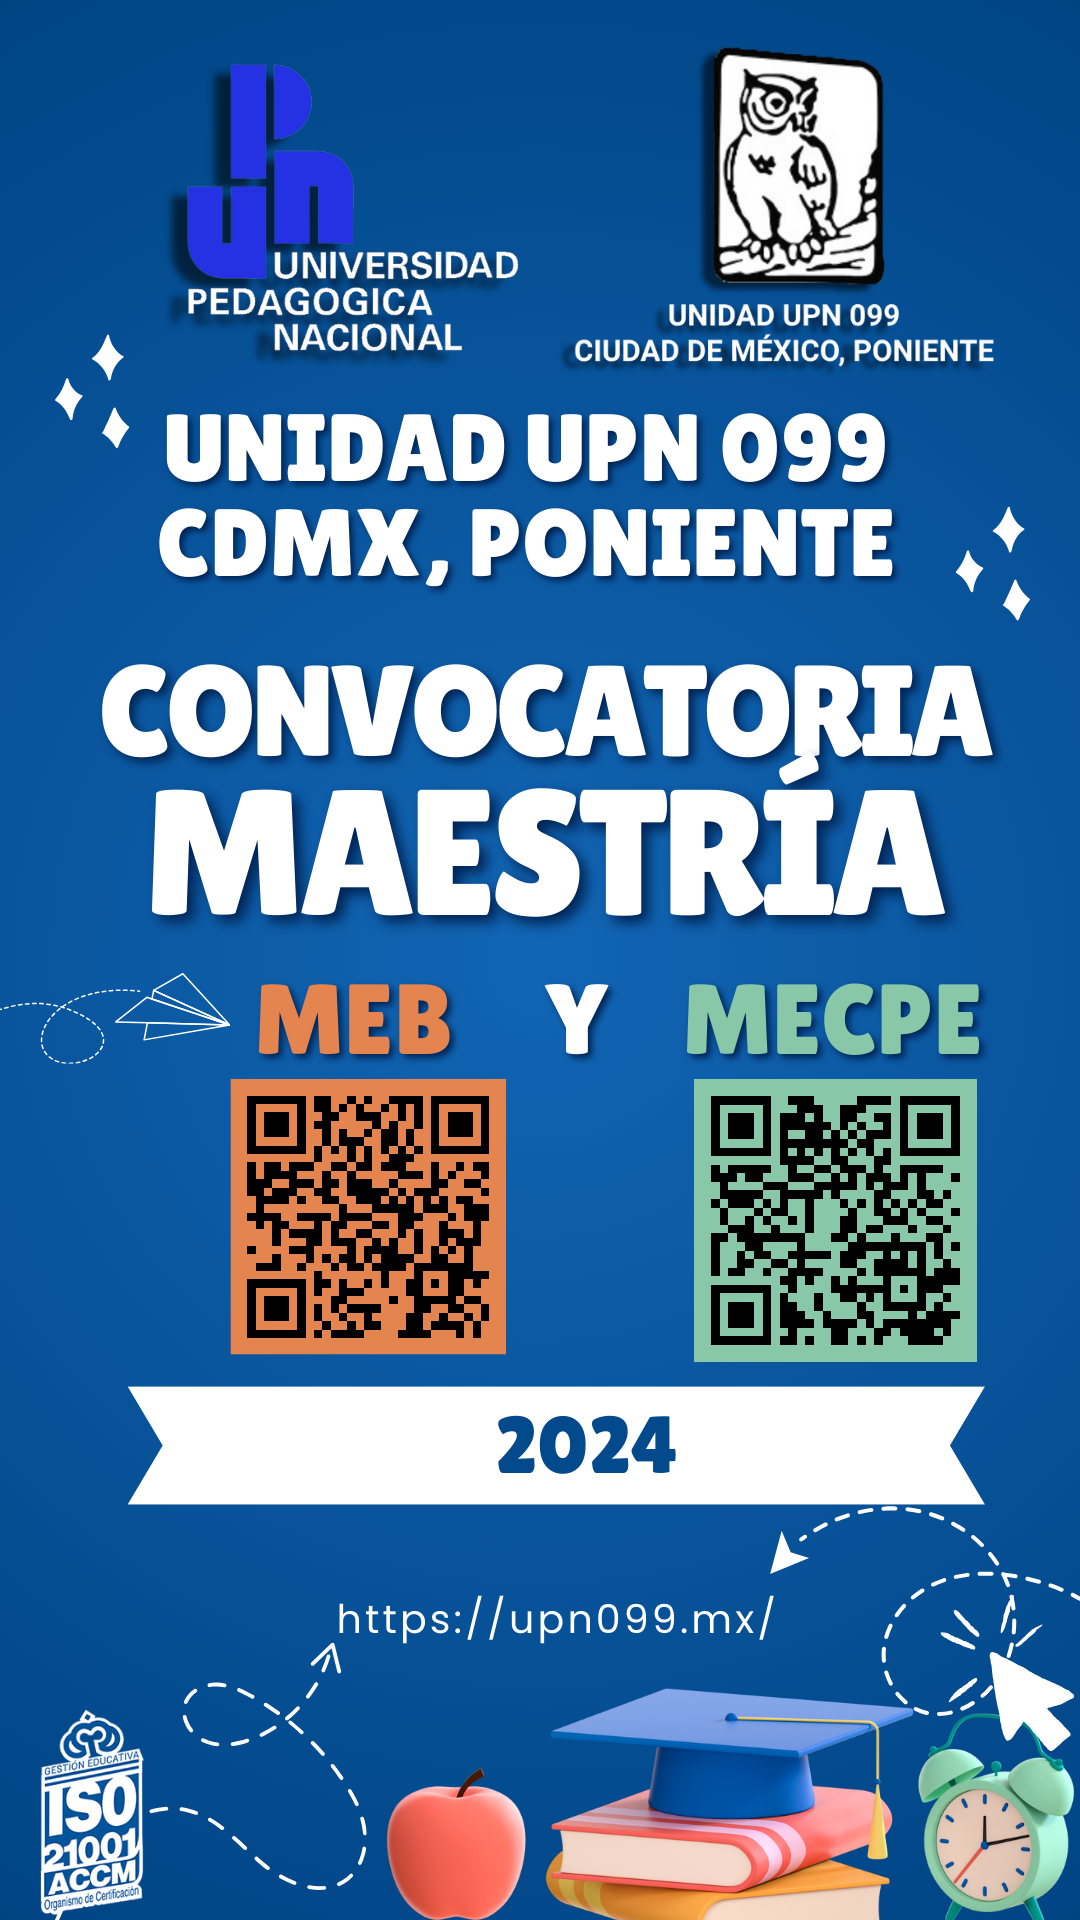 Convocatoria Maestría 2024 Unidad UPN 099 CDMX, Poniente